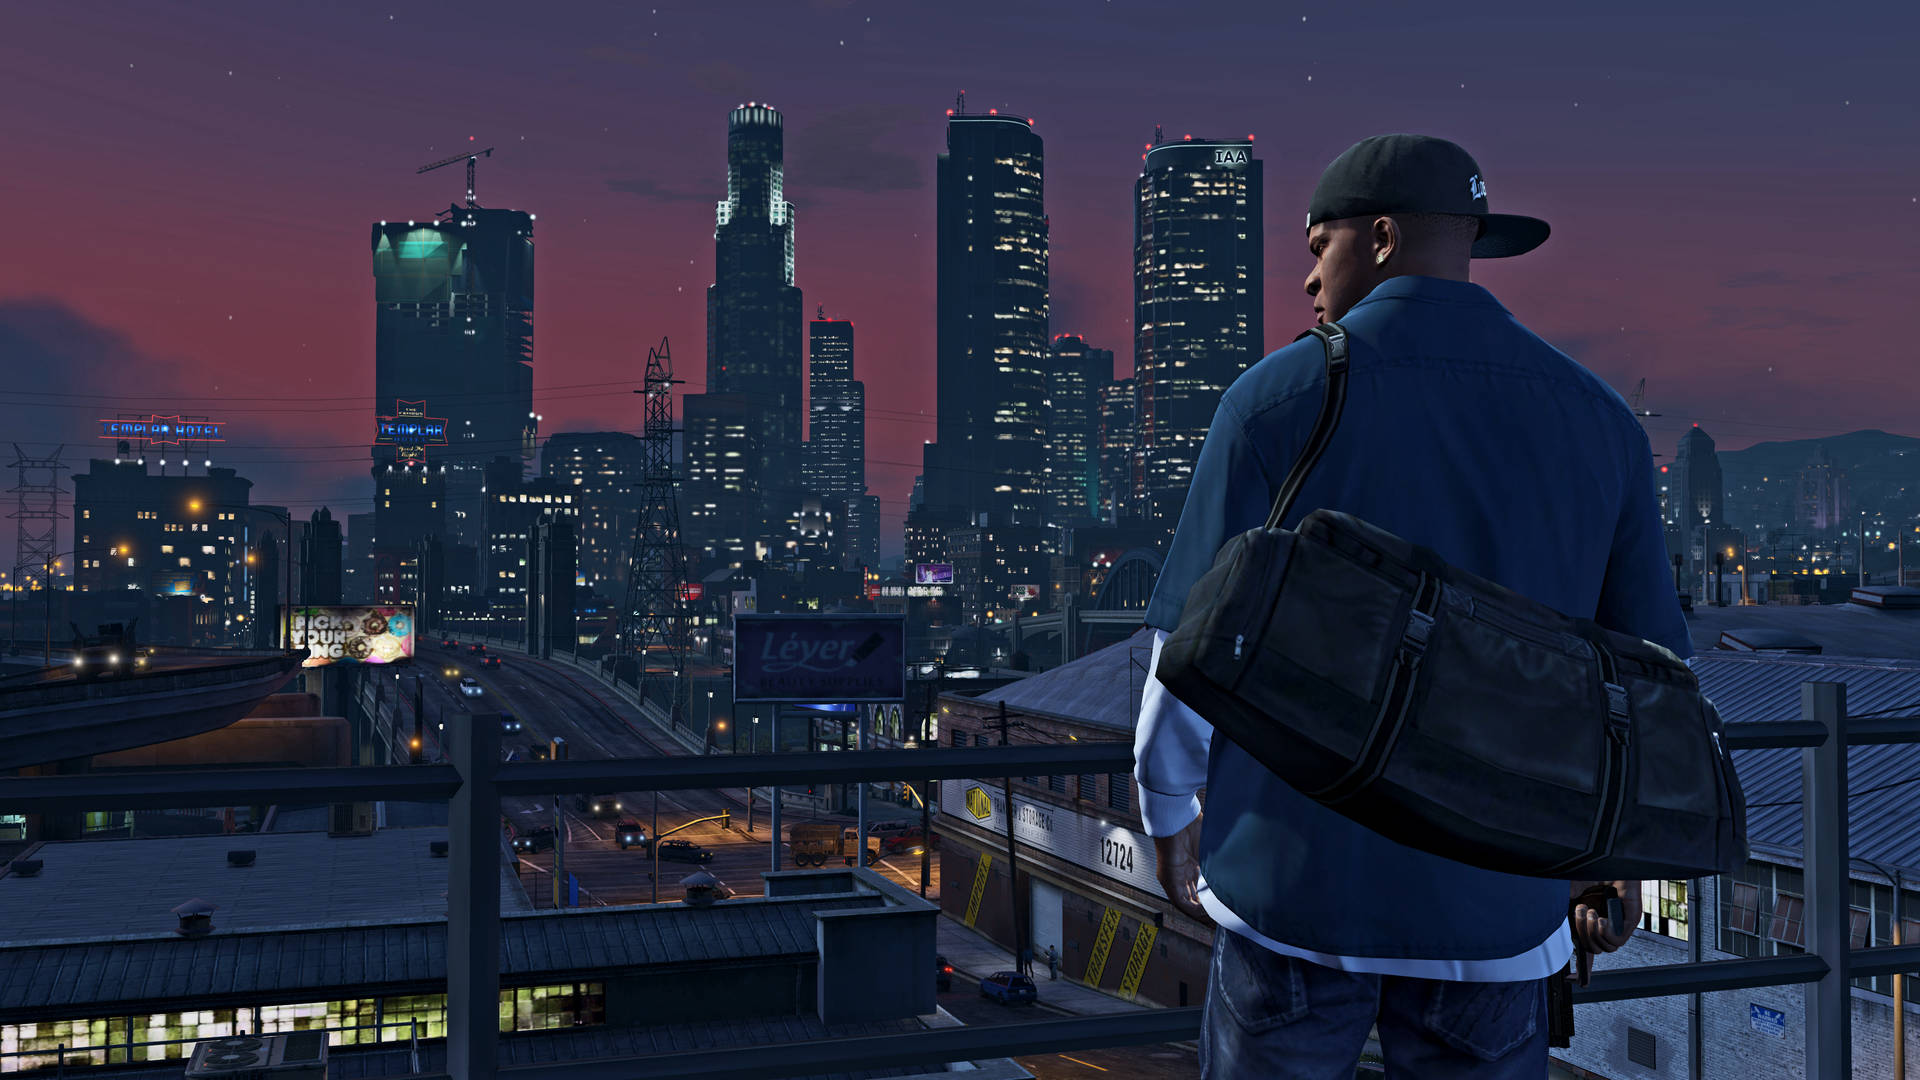 Grand Theft Auto V Franklin Observing Los Santos Wallpaper